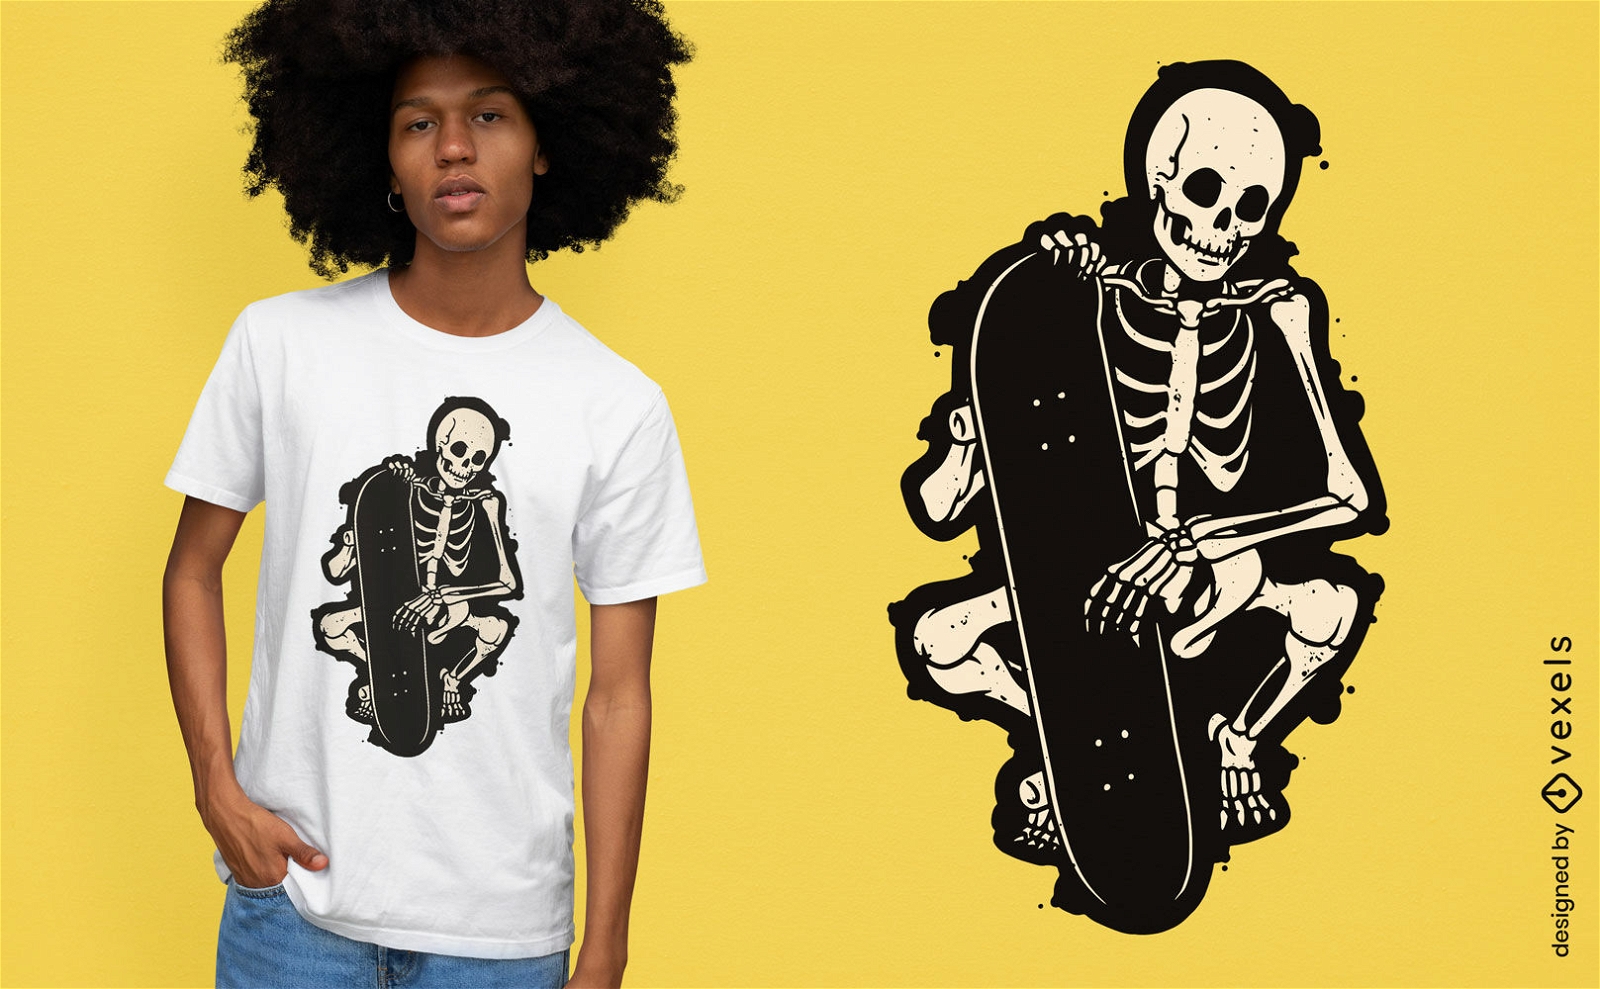 Dise?o de camiseta recortada de esqueleto con monopat?n